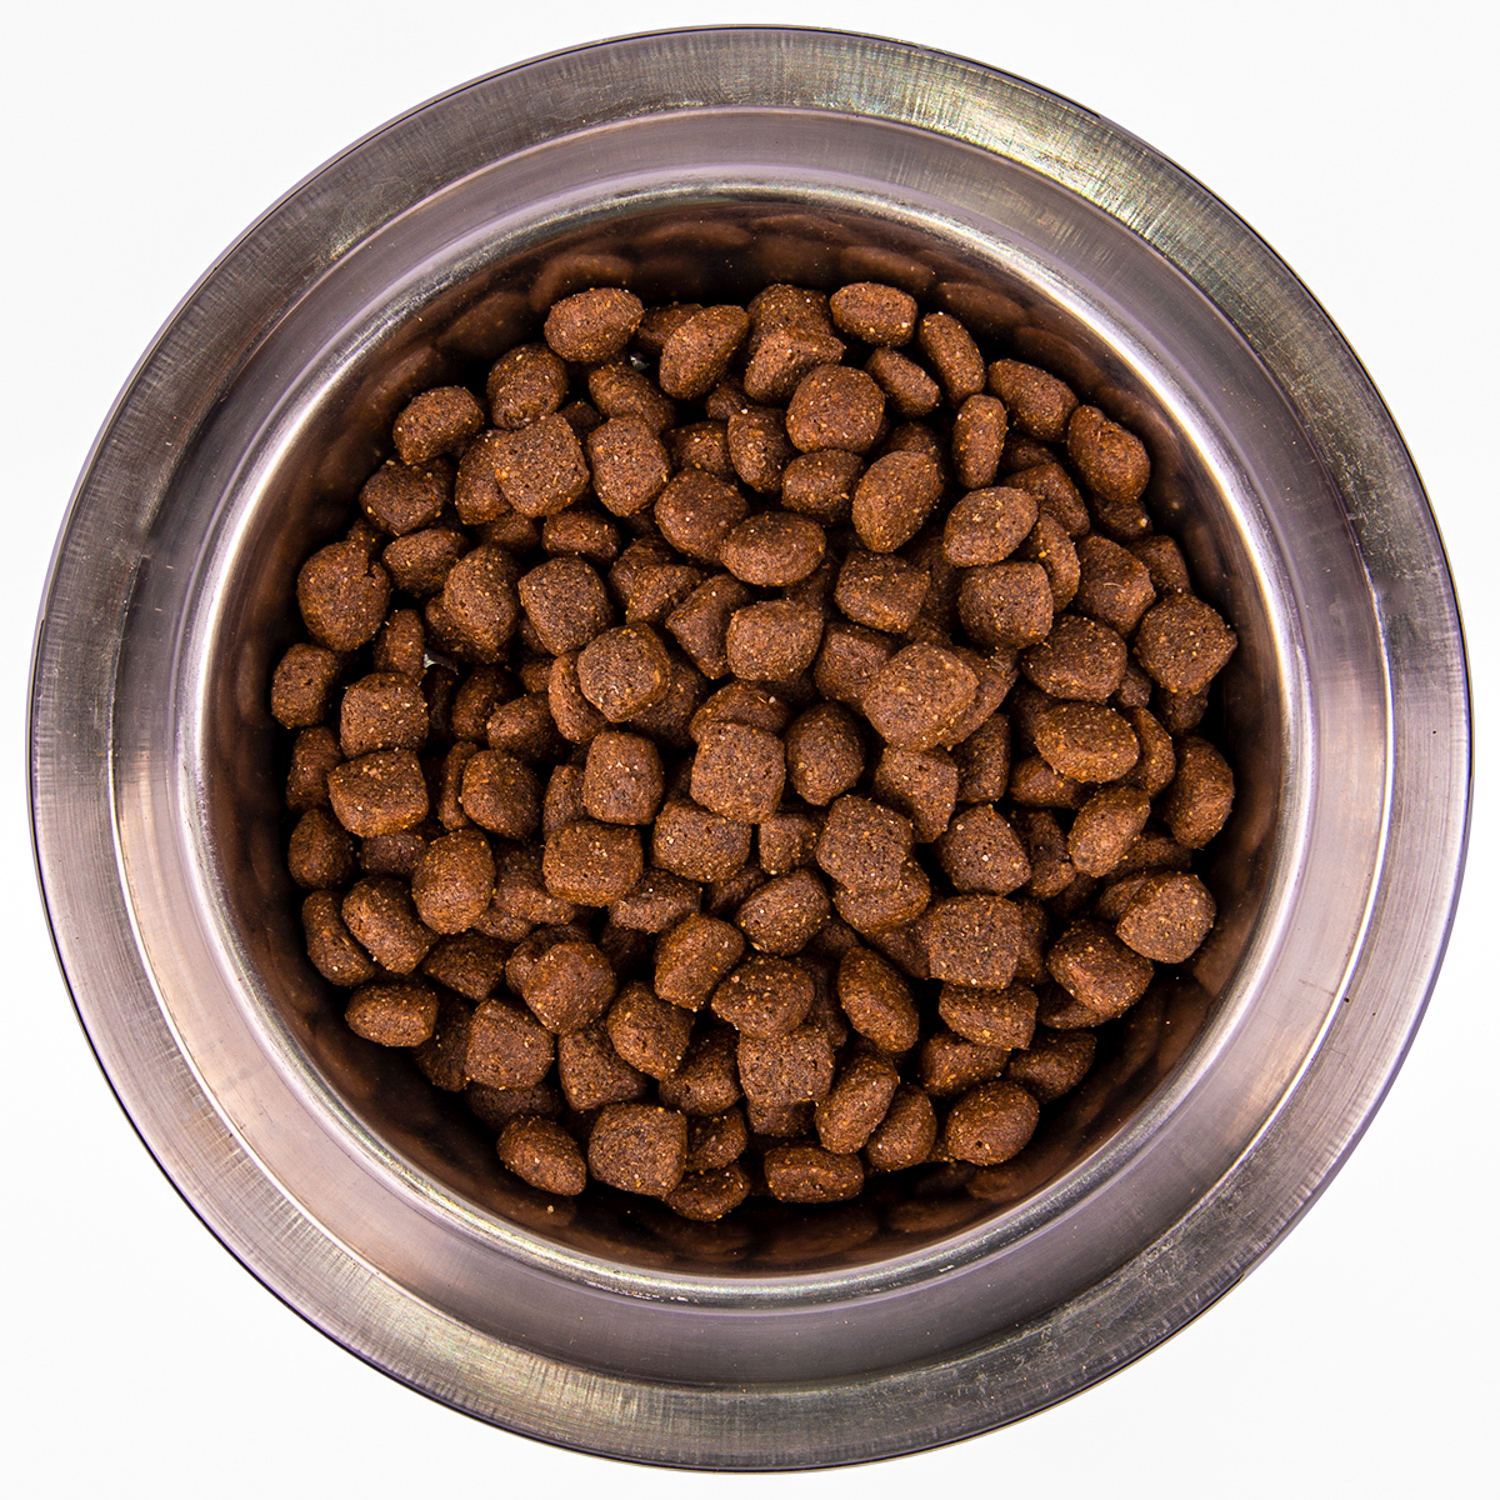 Сухой корм Monge Dog Speciality Line Monoprotein для взрослых собак всех пород, из утки с рисом и картофелем 12 кг